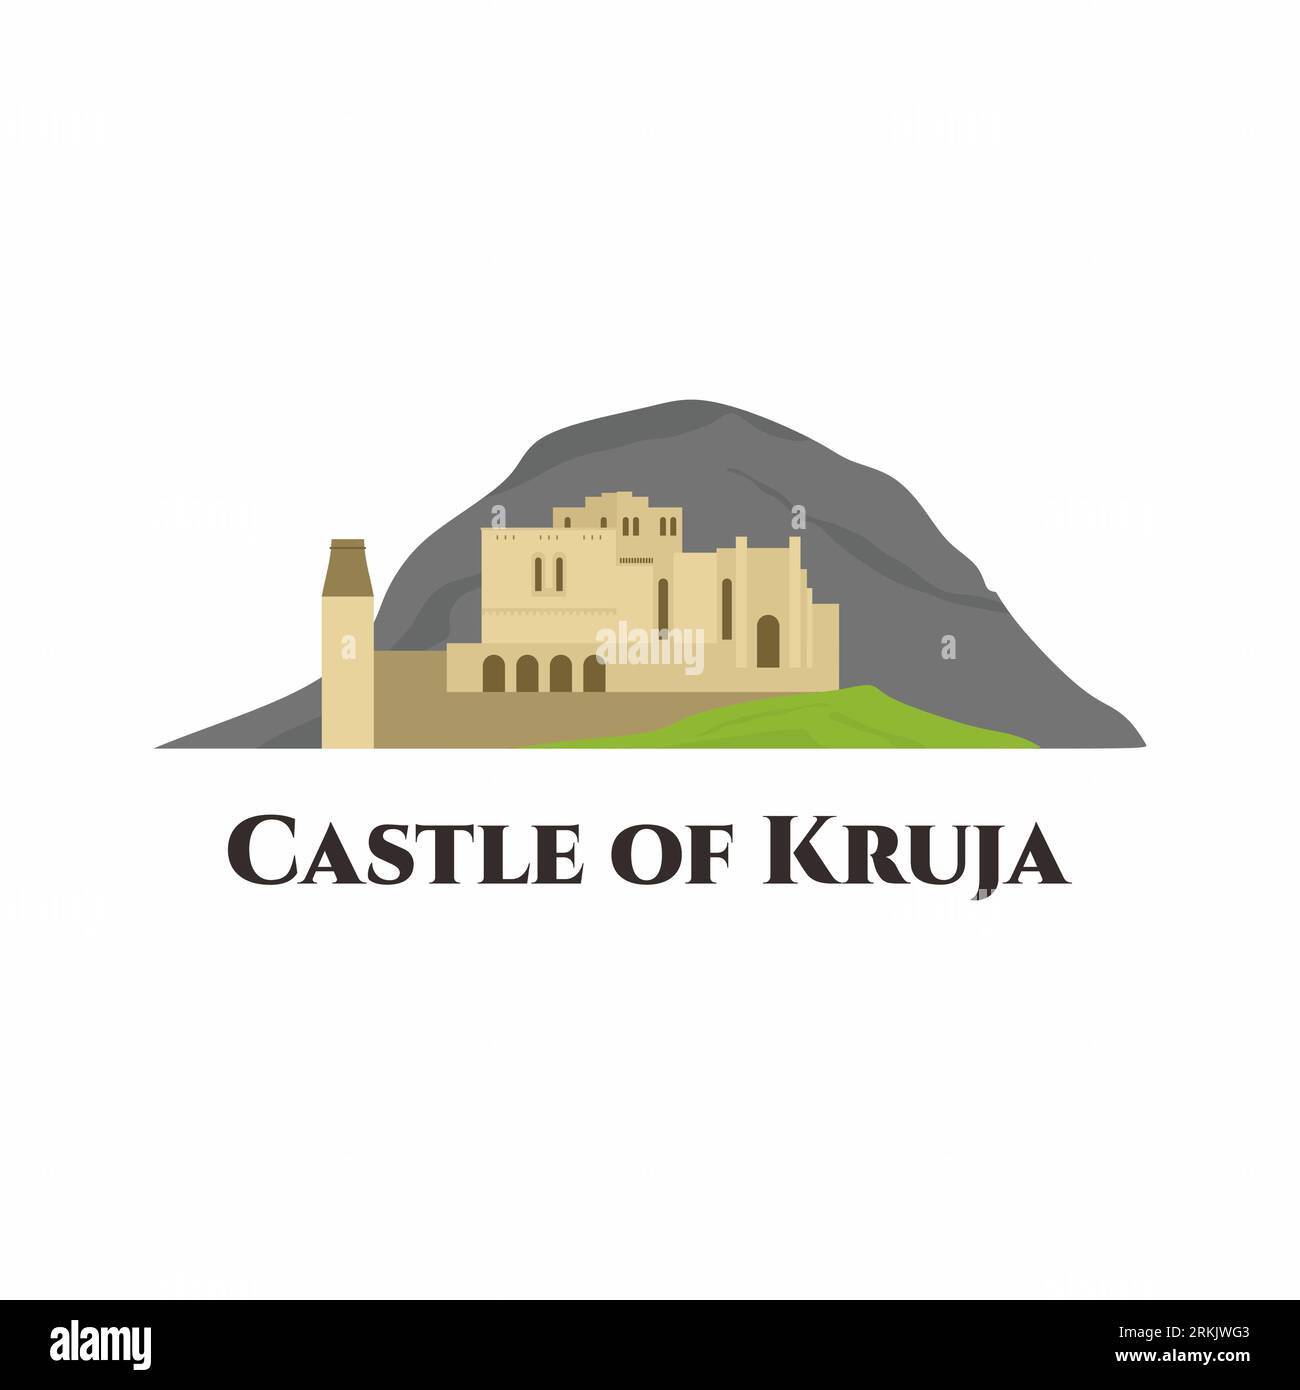 Das Schloss Krujë. Es ist eine Burg in der Stadt Krujë, Albanien und das Zentrum von Skanderbegs Rebellion gegen das Osmanische Reich. Reise nach Albanien, Stock Vektor